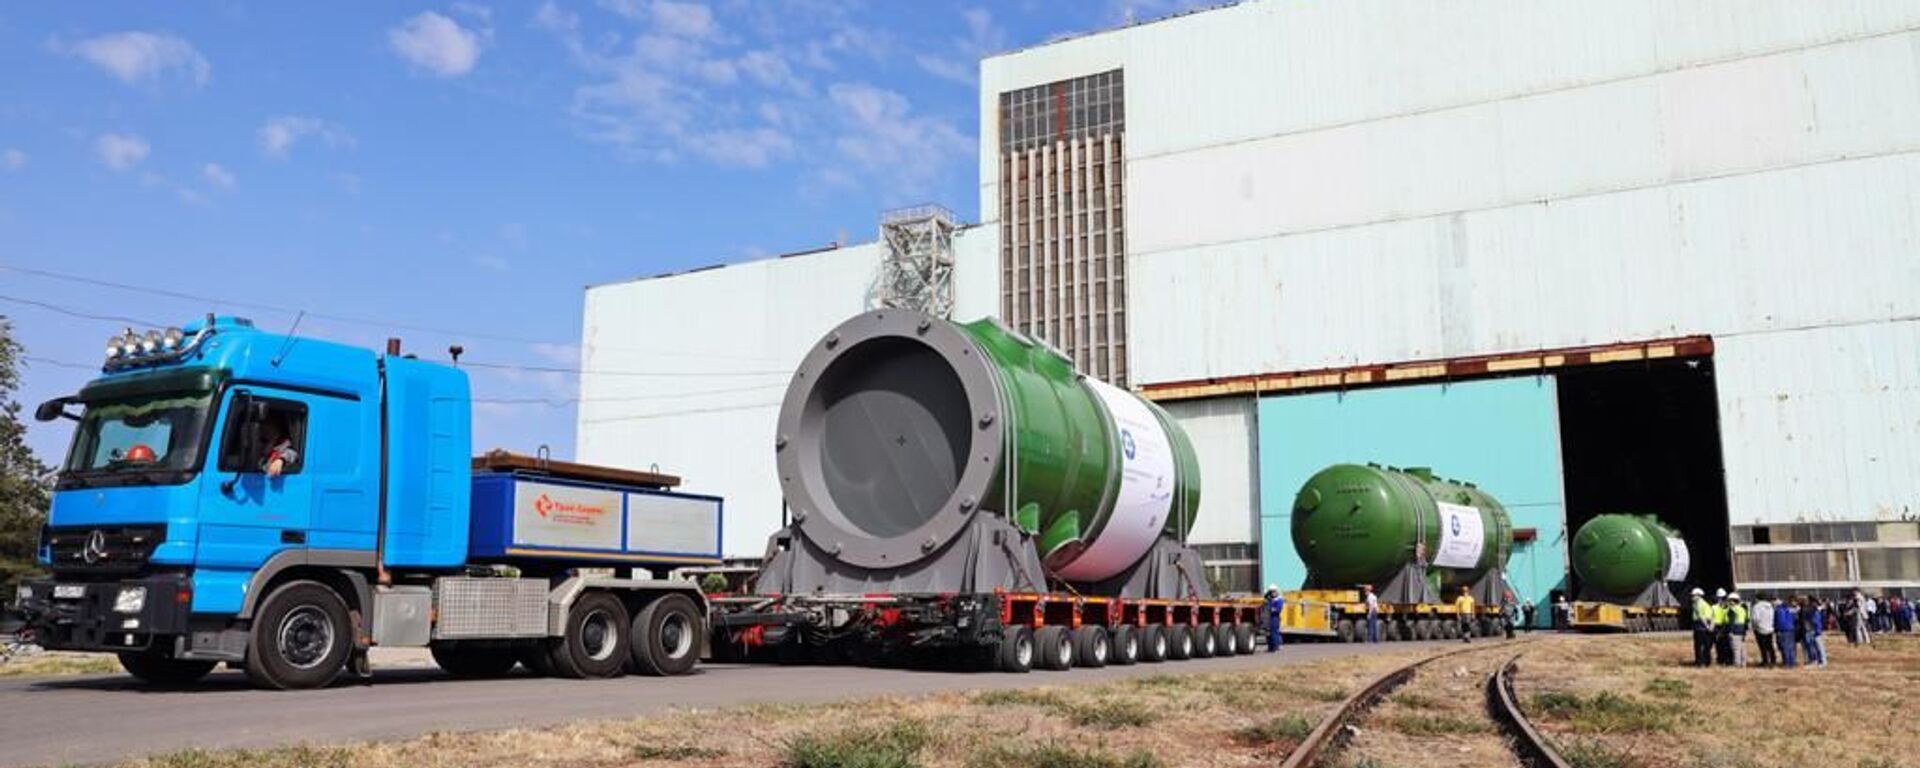 مصنع آتوماش يقوم بشحن أول هيكل مفاعل لمحطة أكويو النووية الأولى من نوعها في تركيا  - سبوتنيك عربي, 1920, 10.03.2021